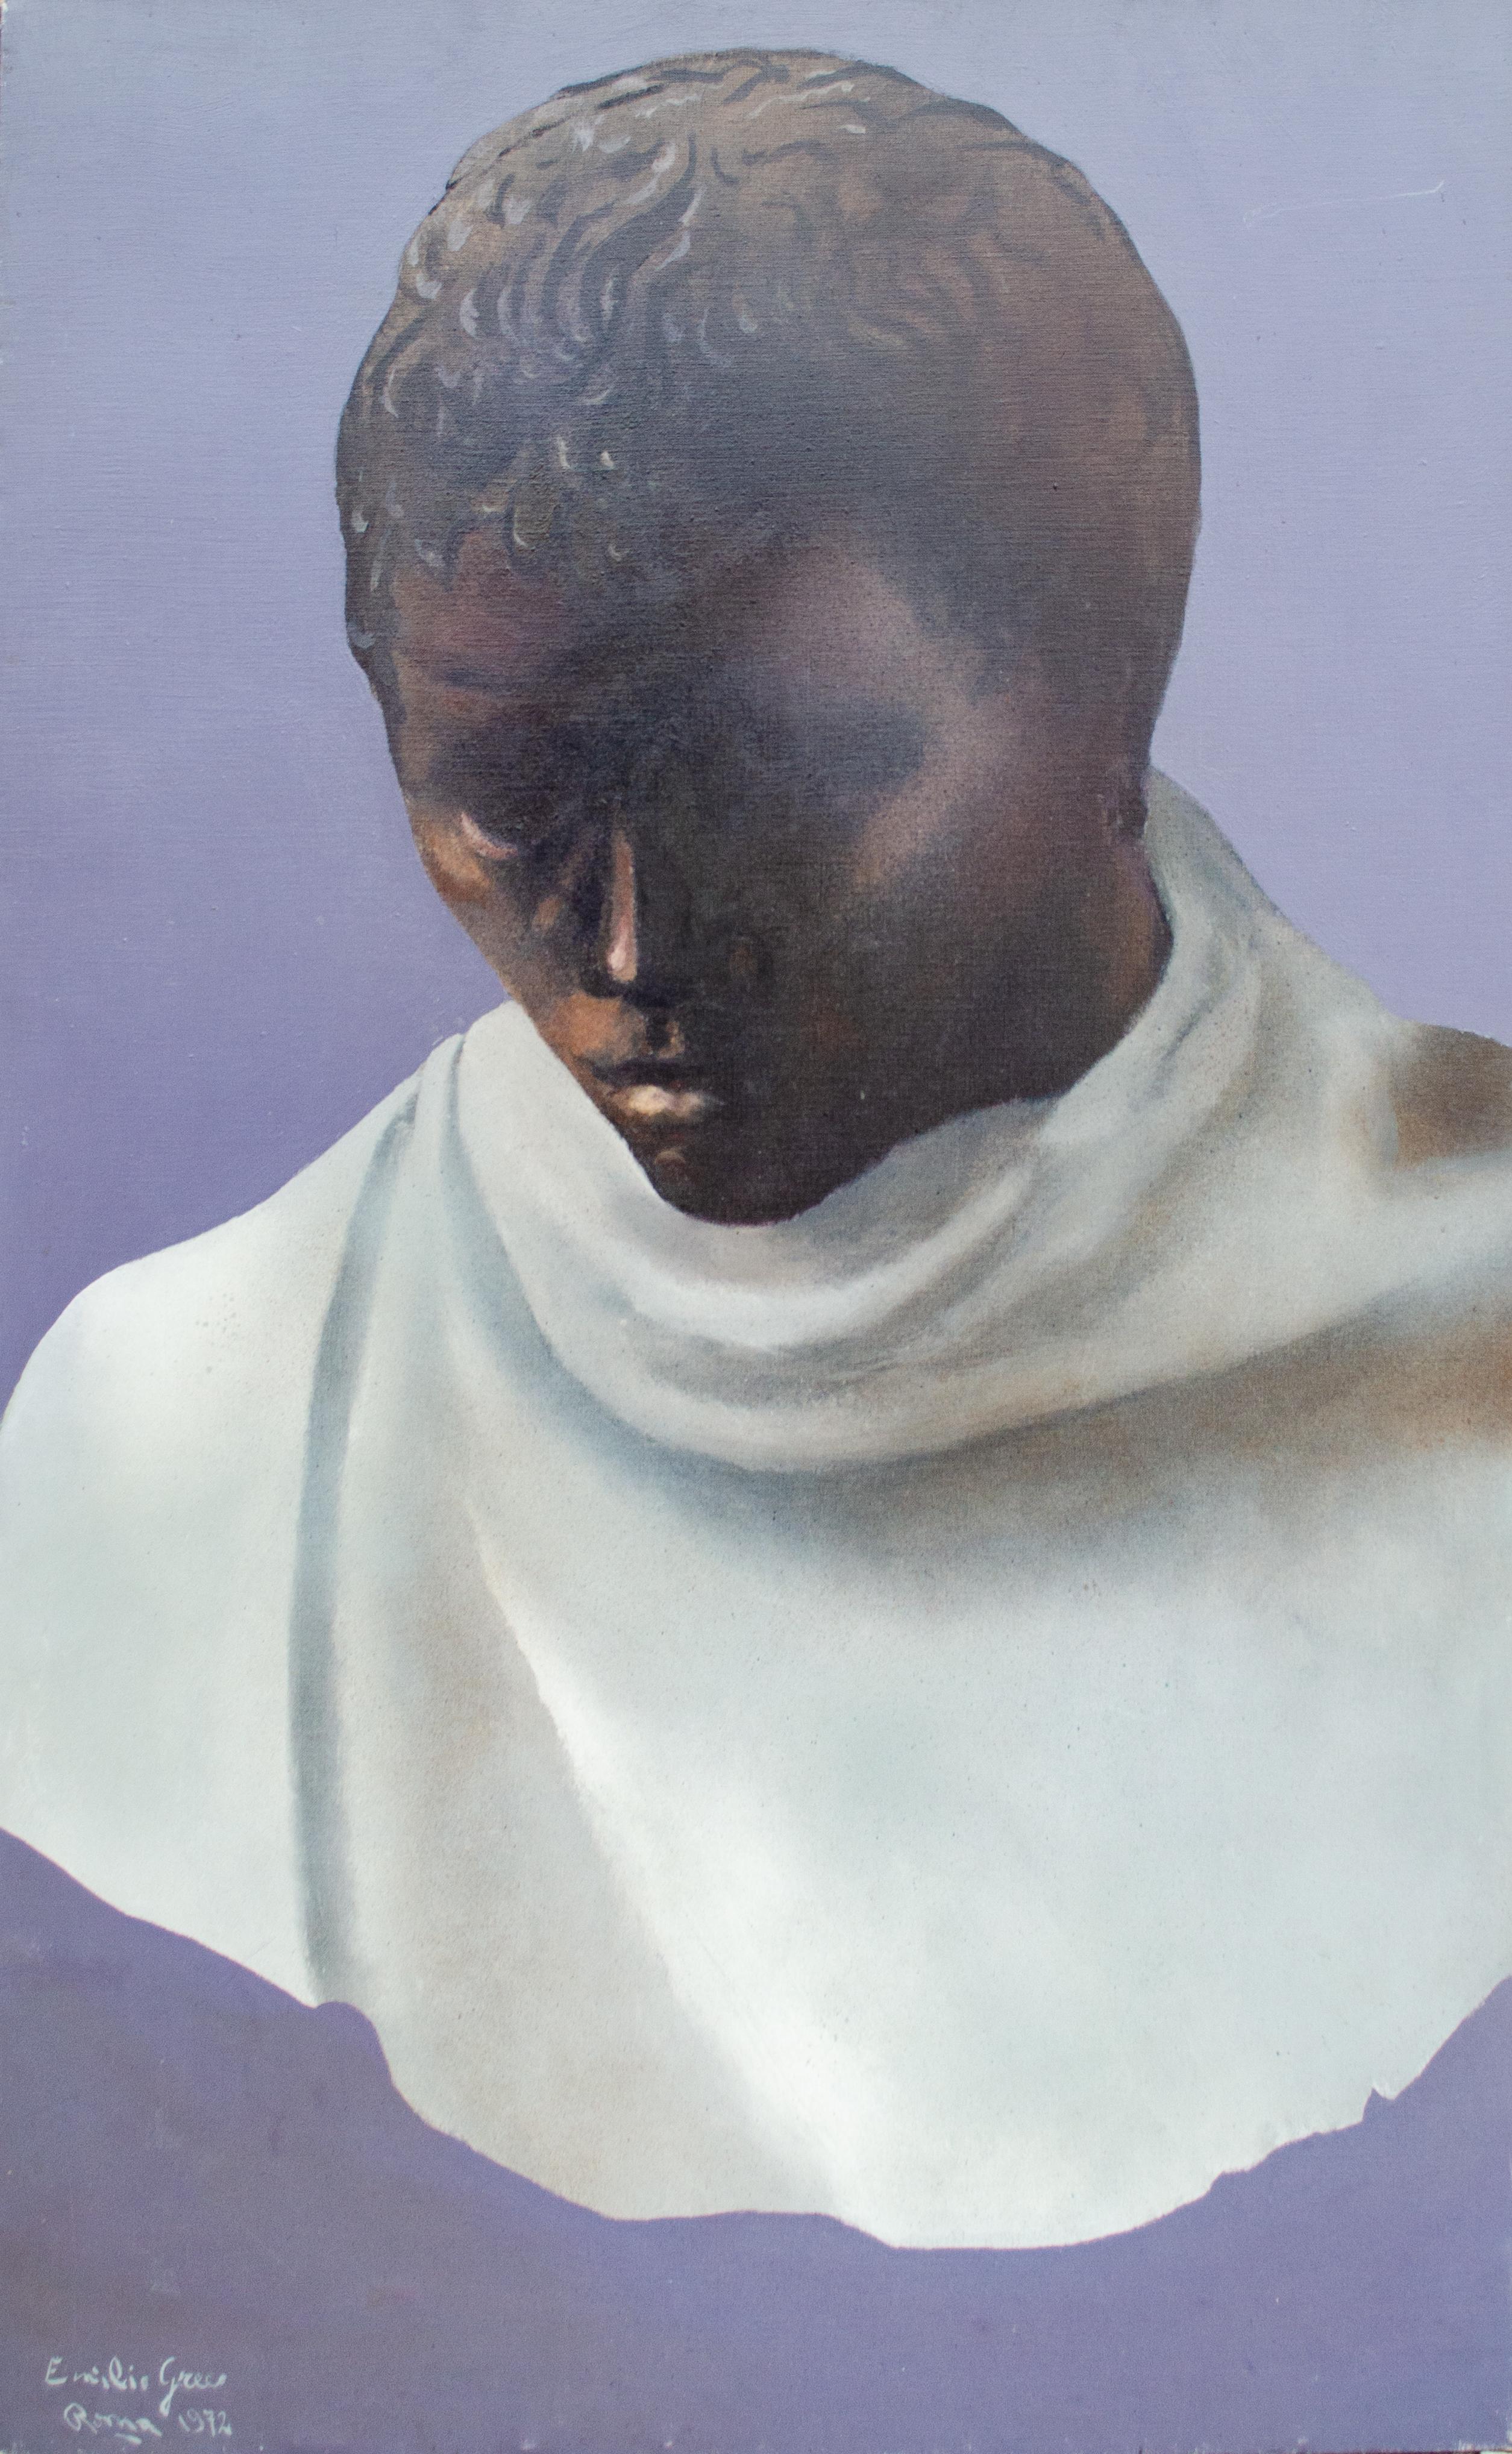 Emilio Greco (italien, 1913-1995)
Rome, 1972
Huile sur toile
45 1/2 x 28 3/4 in.
Signé et inscrit en bas à gauche : Emilio Greco, Rome, 1972.

Emilio Greco, (né le 11 octobre 1913 à Catane, Italie - mort le 5 avril 1995 à Rome), sculpteur italien